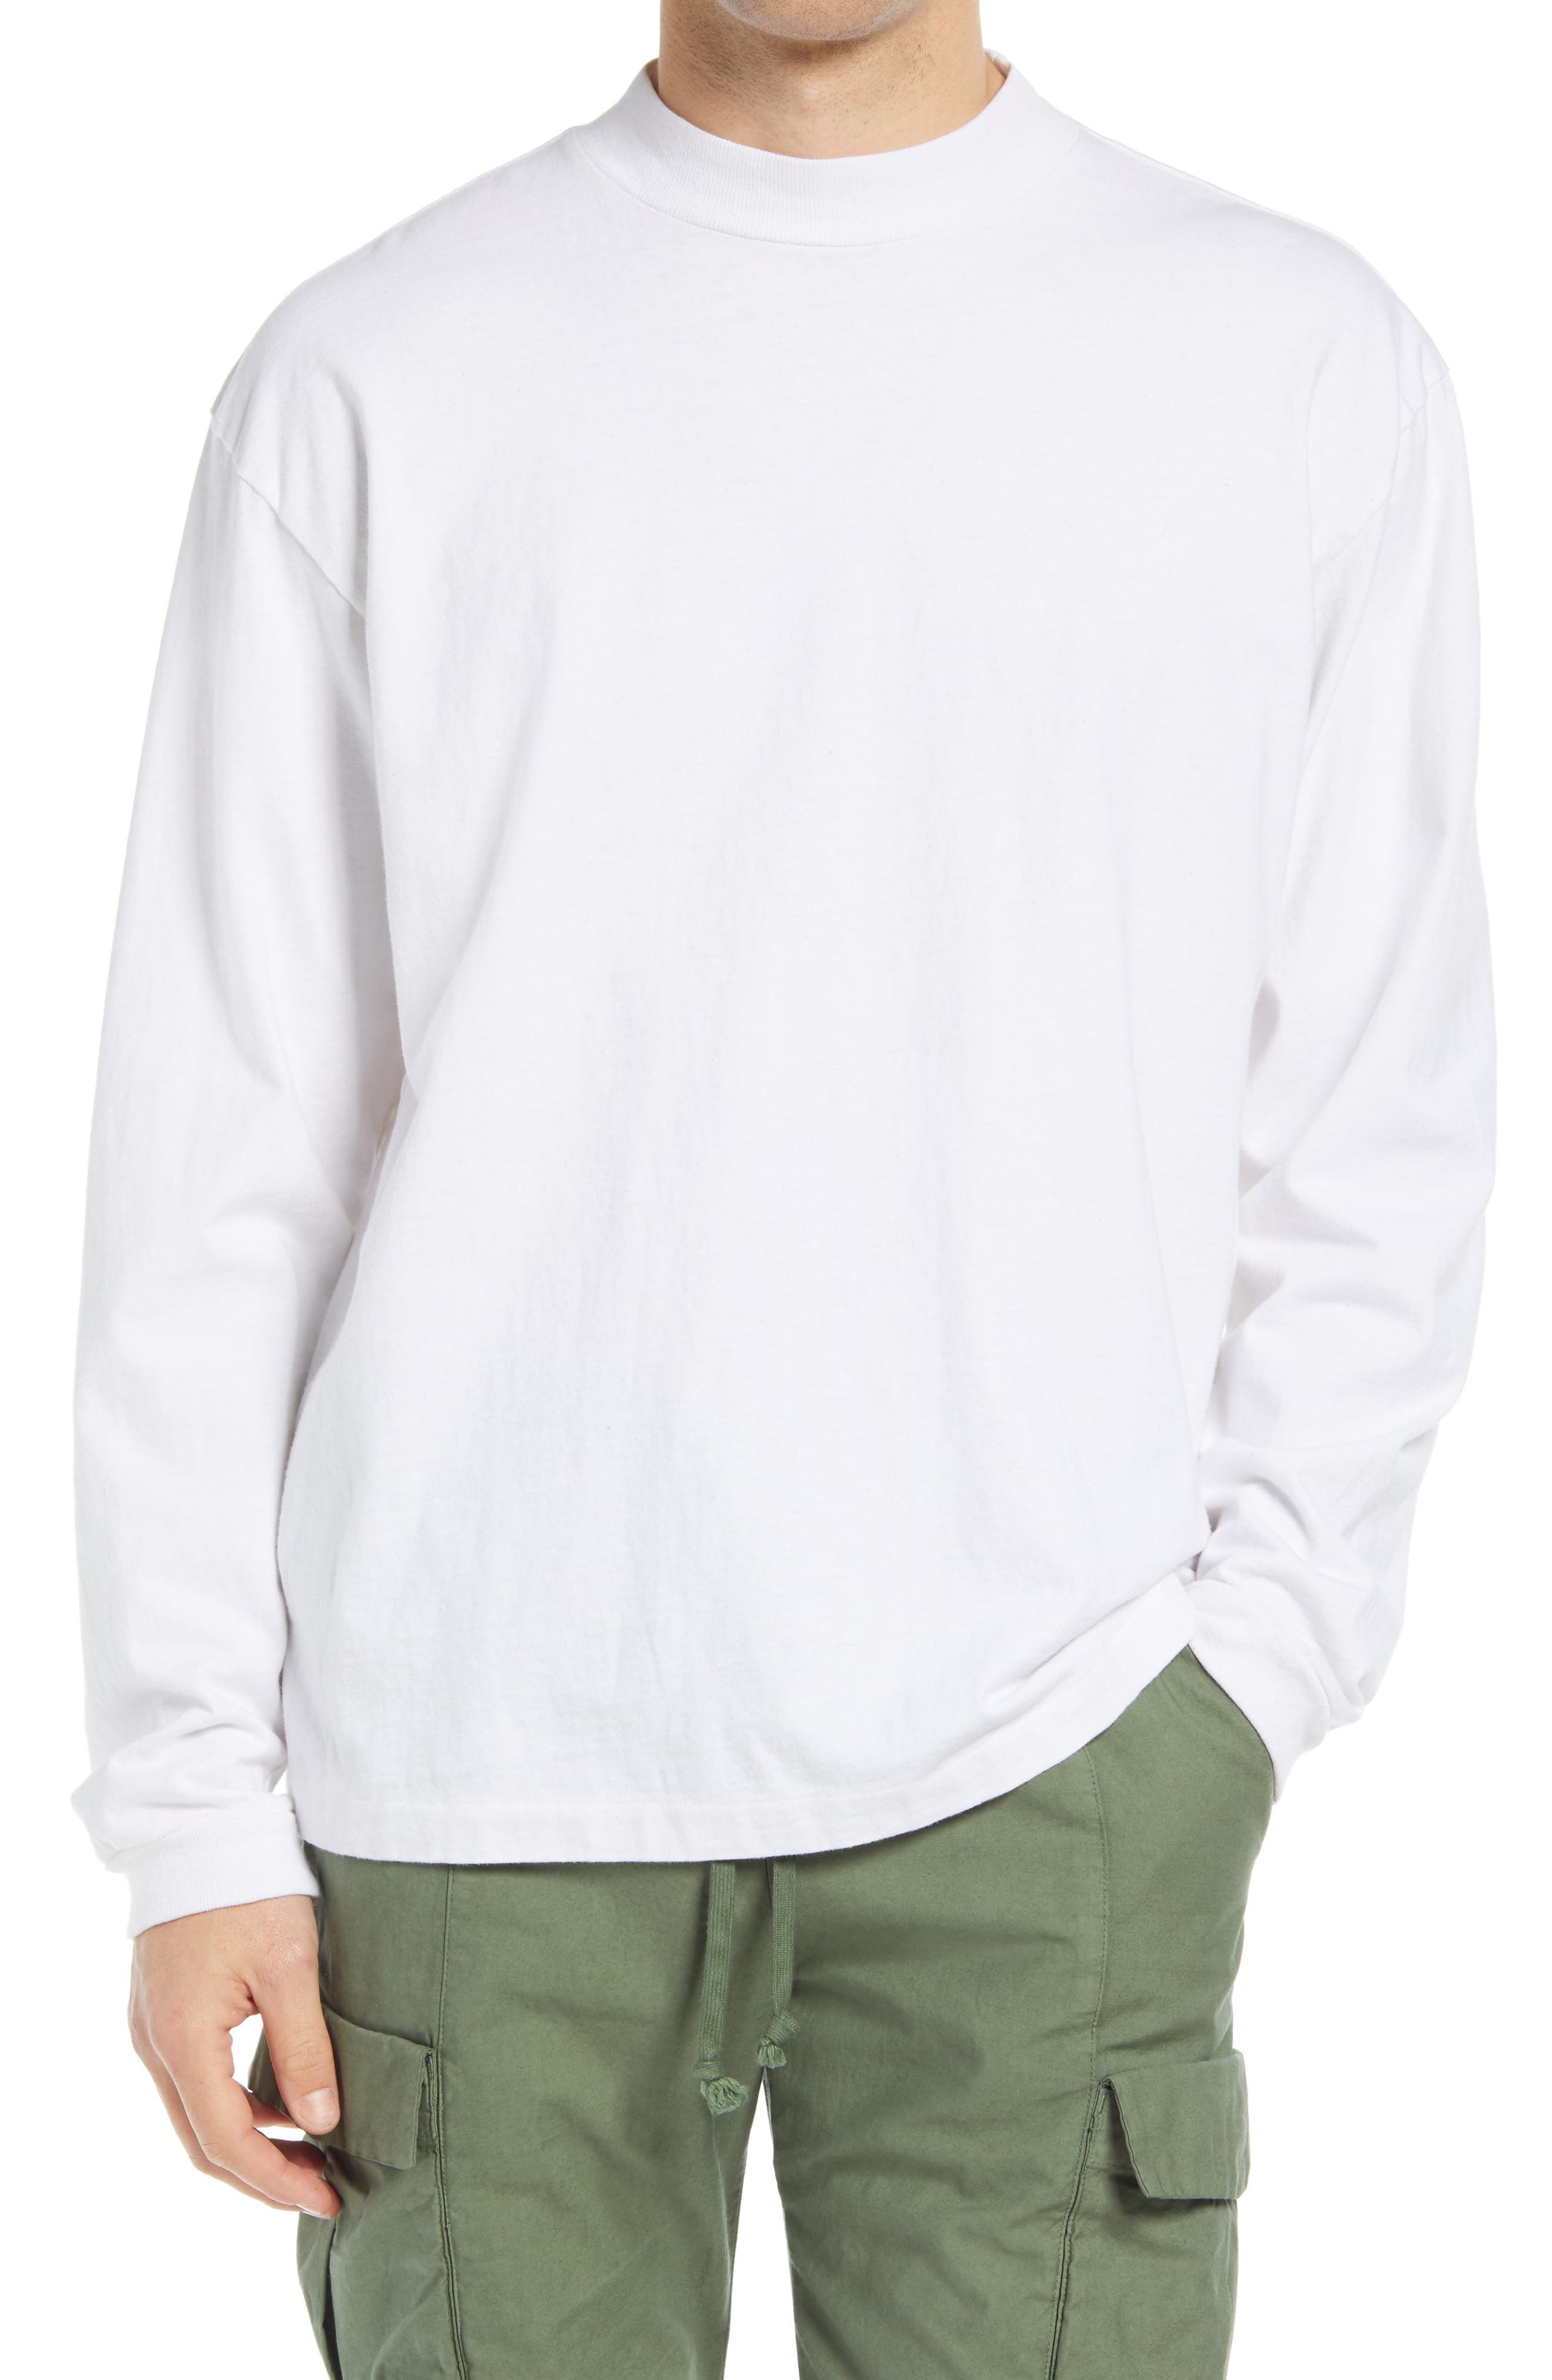 John Elliott Men's 900 Long Sleeve Mock Neck T-Shirt in White at Nordstrom, Size X-Large